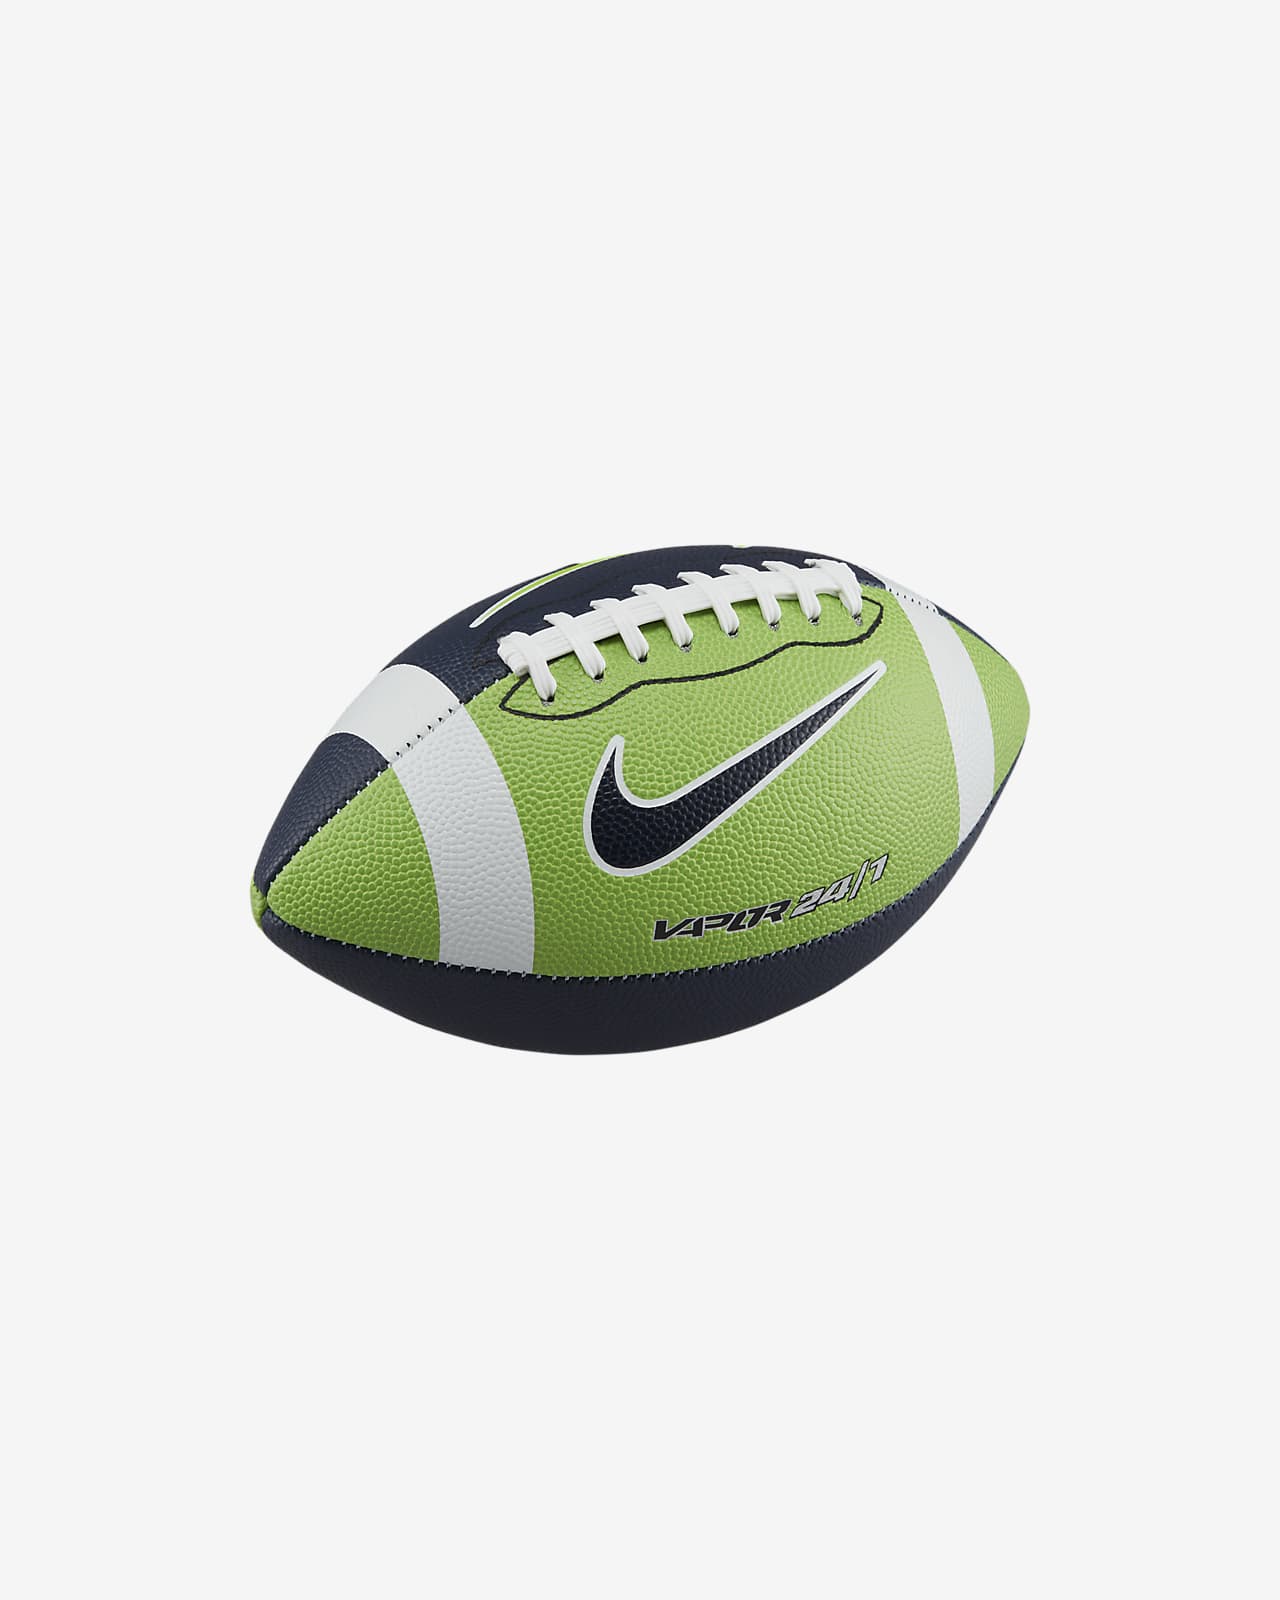 Balón fútbol americano Vapor 24/7. Nike.com